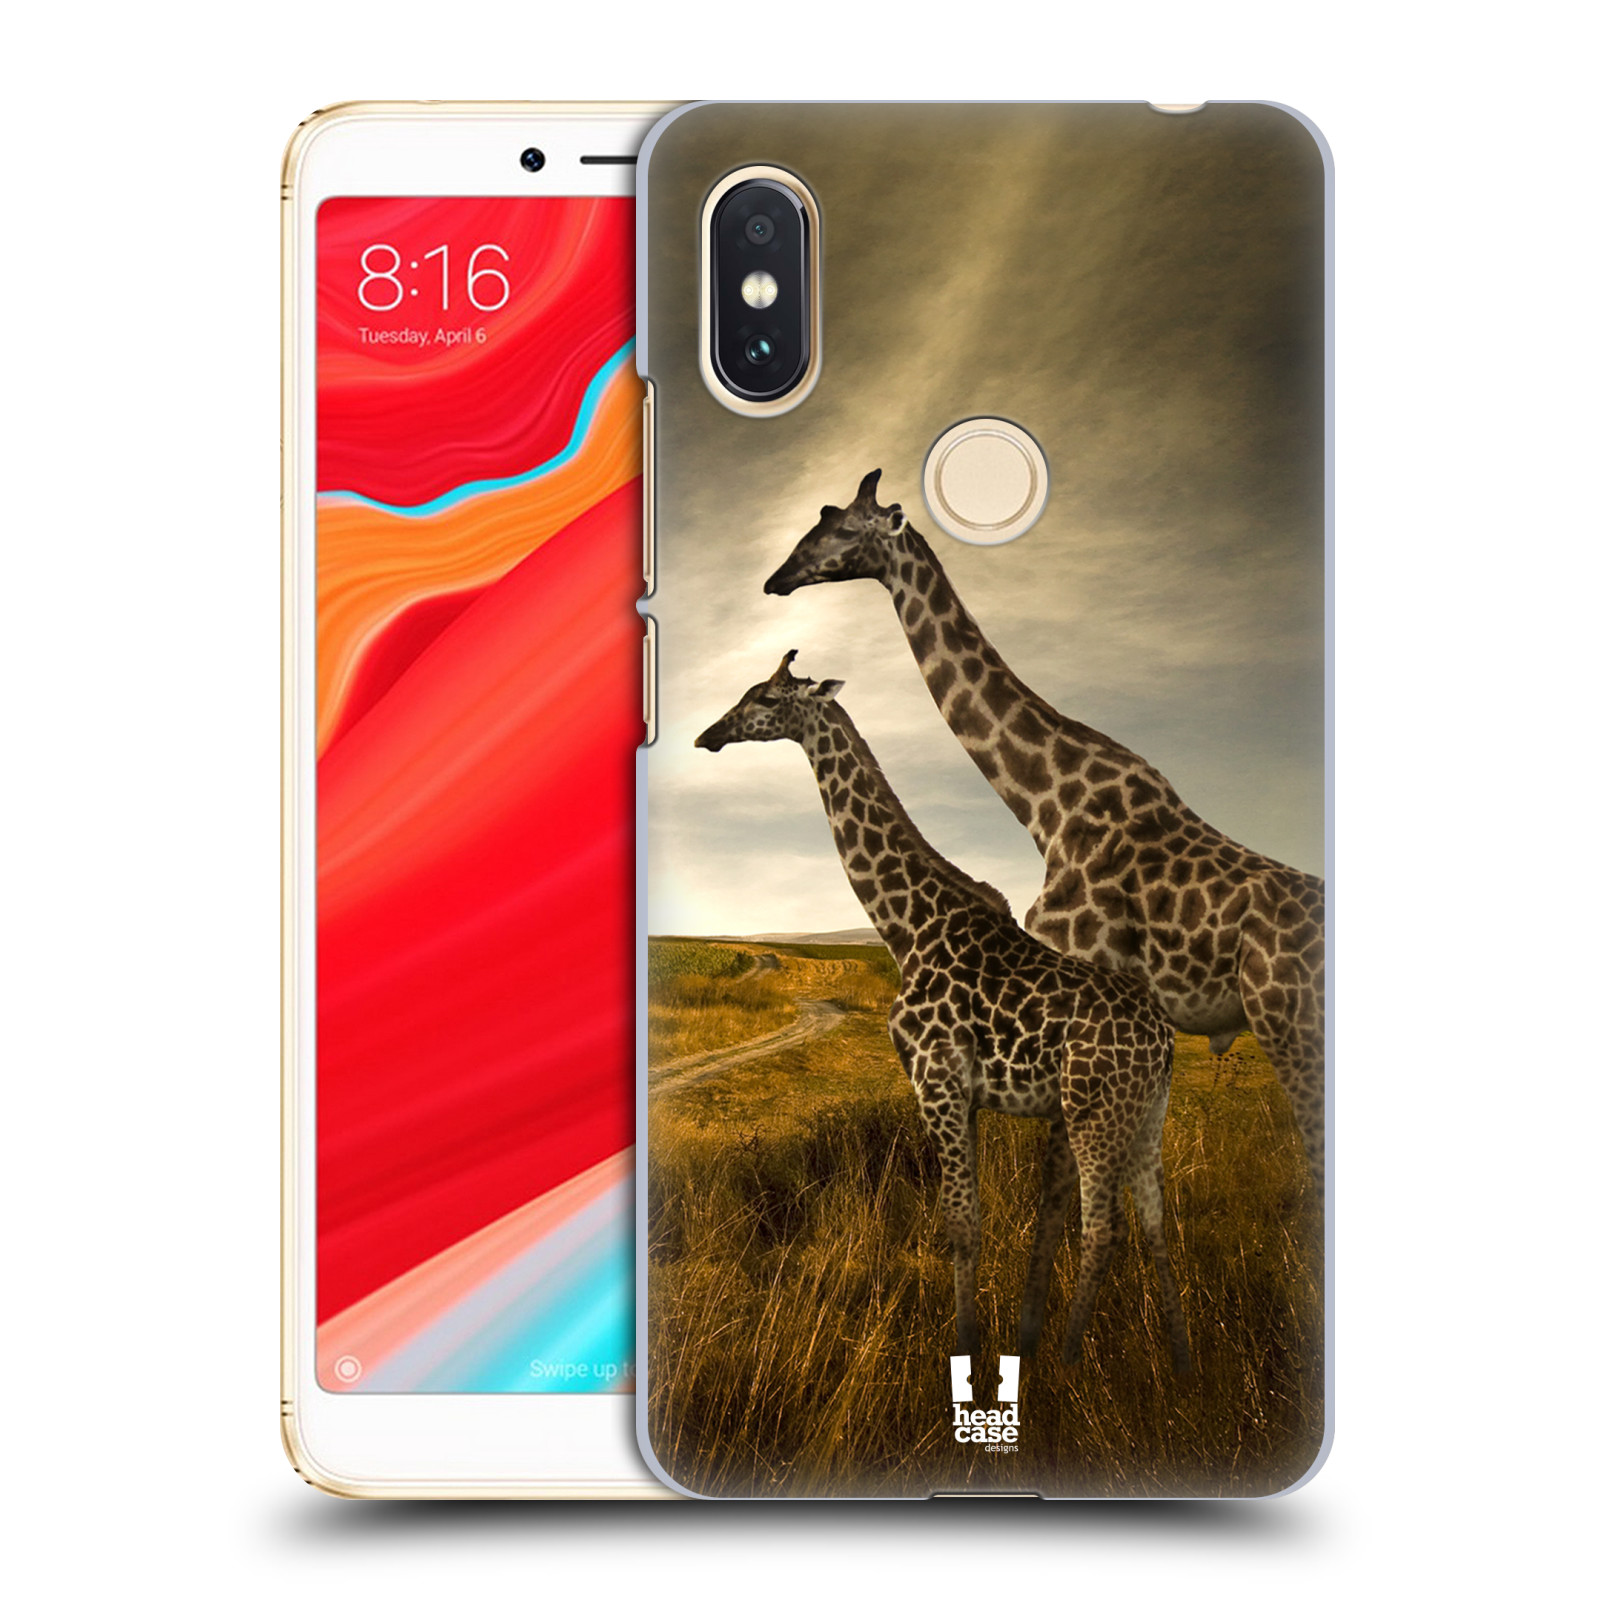 HEAD CASE plastový obal na mobil Xiaomi Redmi S2 vzor Divočina, Divoký život a zvířata foto AFRIKA ŽIRAFY VÝHLED